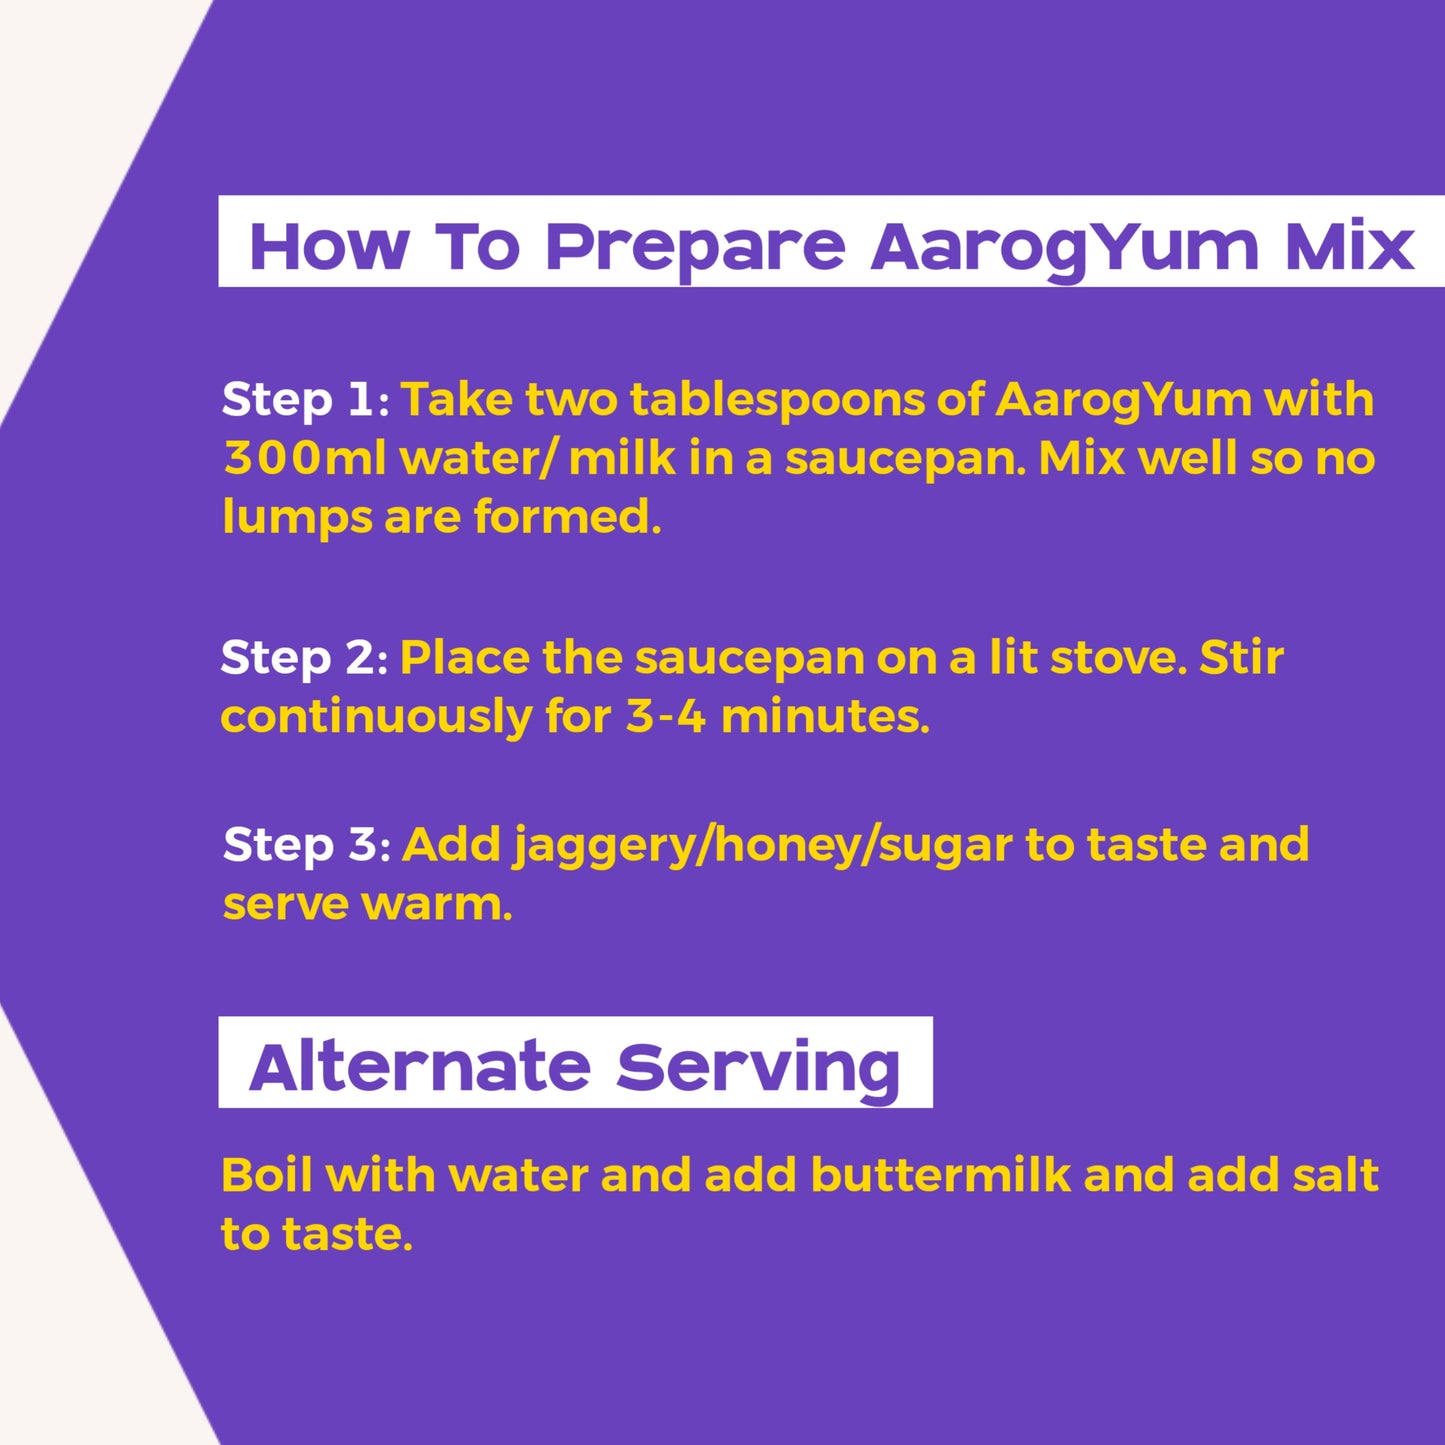 AarogYum Health Mix